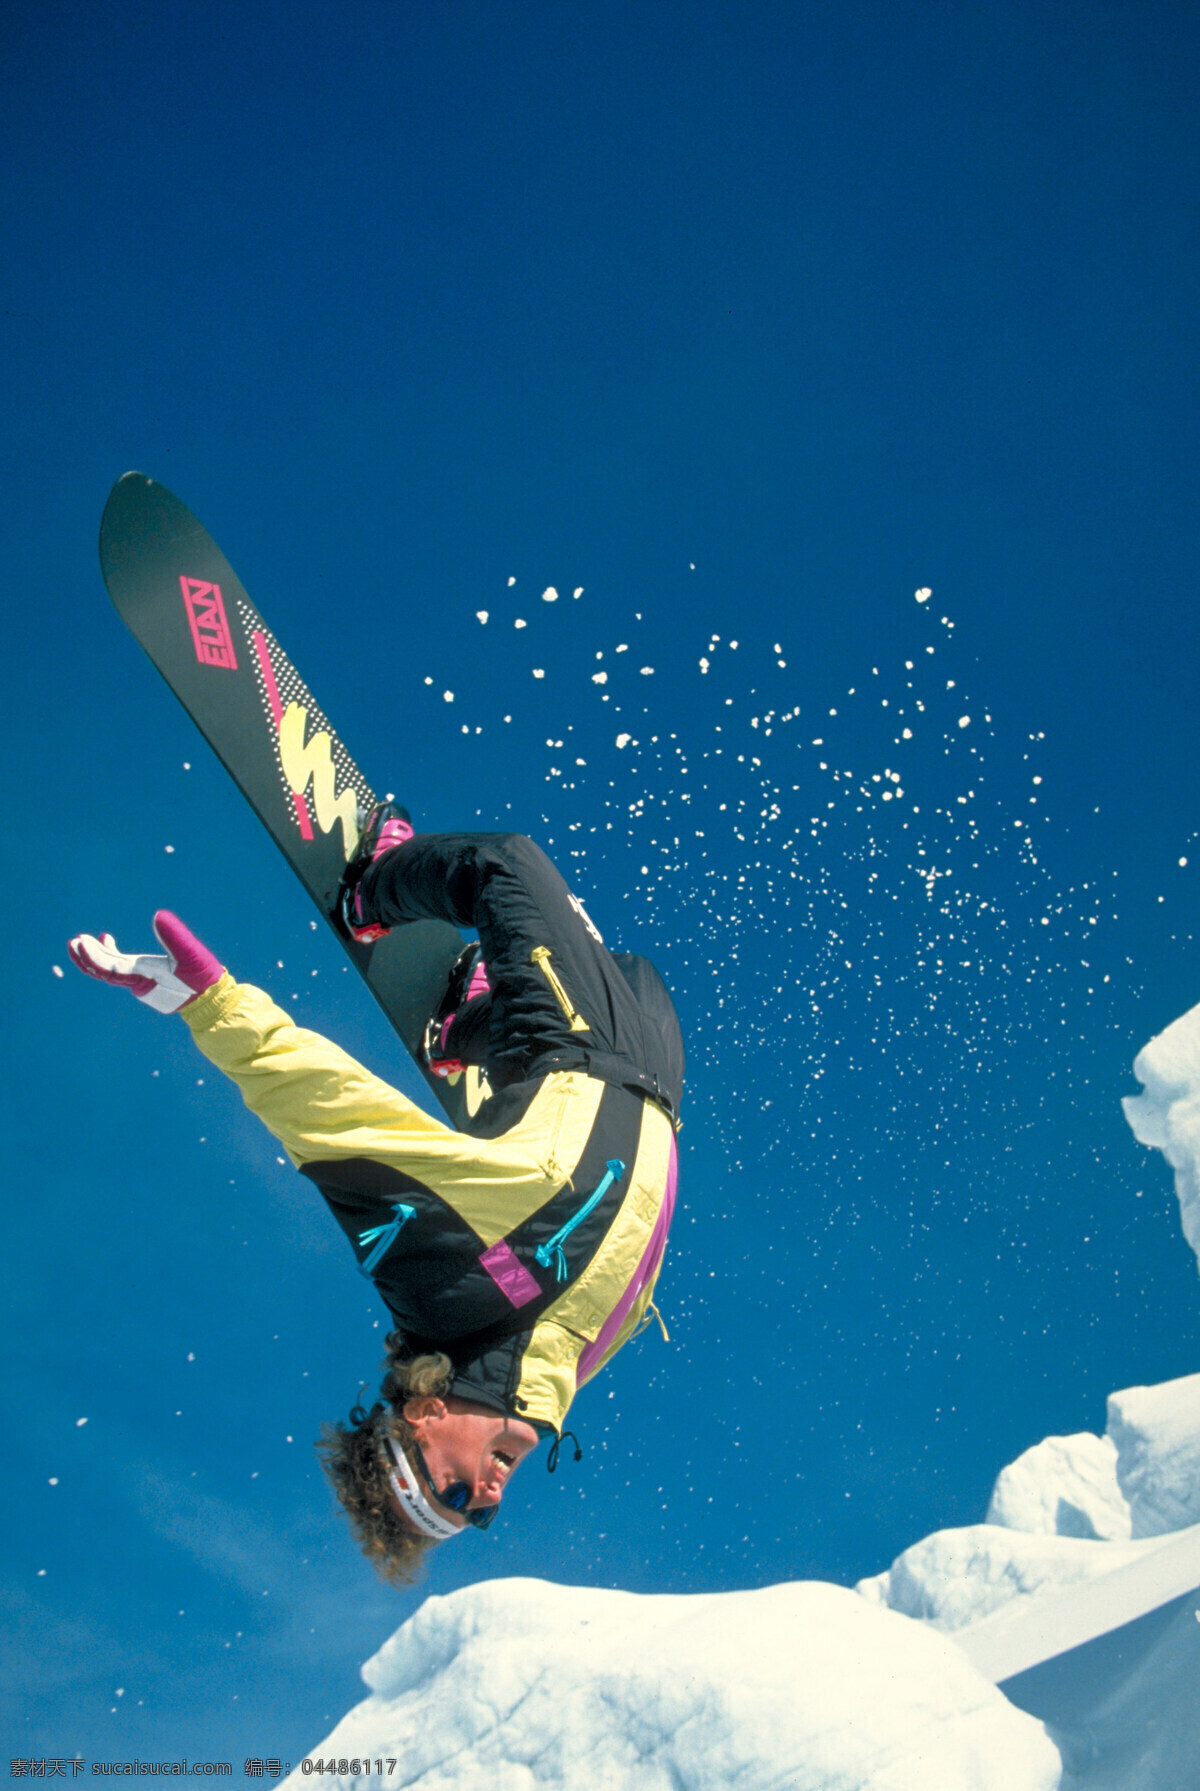 雪地运动 雪地 运动 雪山 飞舞 划雪 旅游摄影 自然风景 雪地风景 摄影图库 300